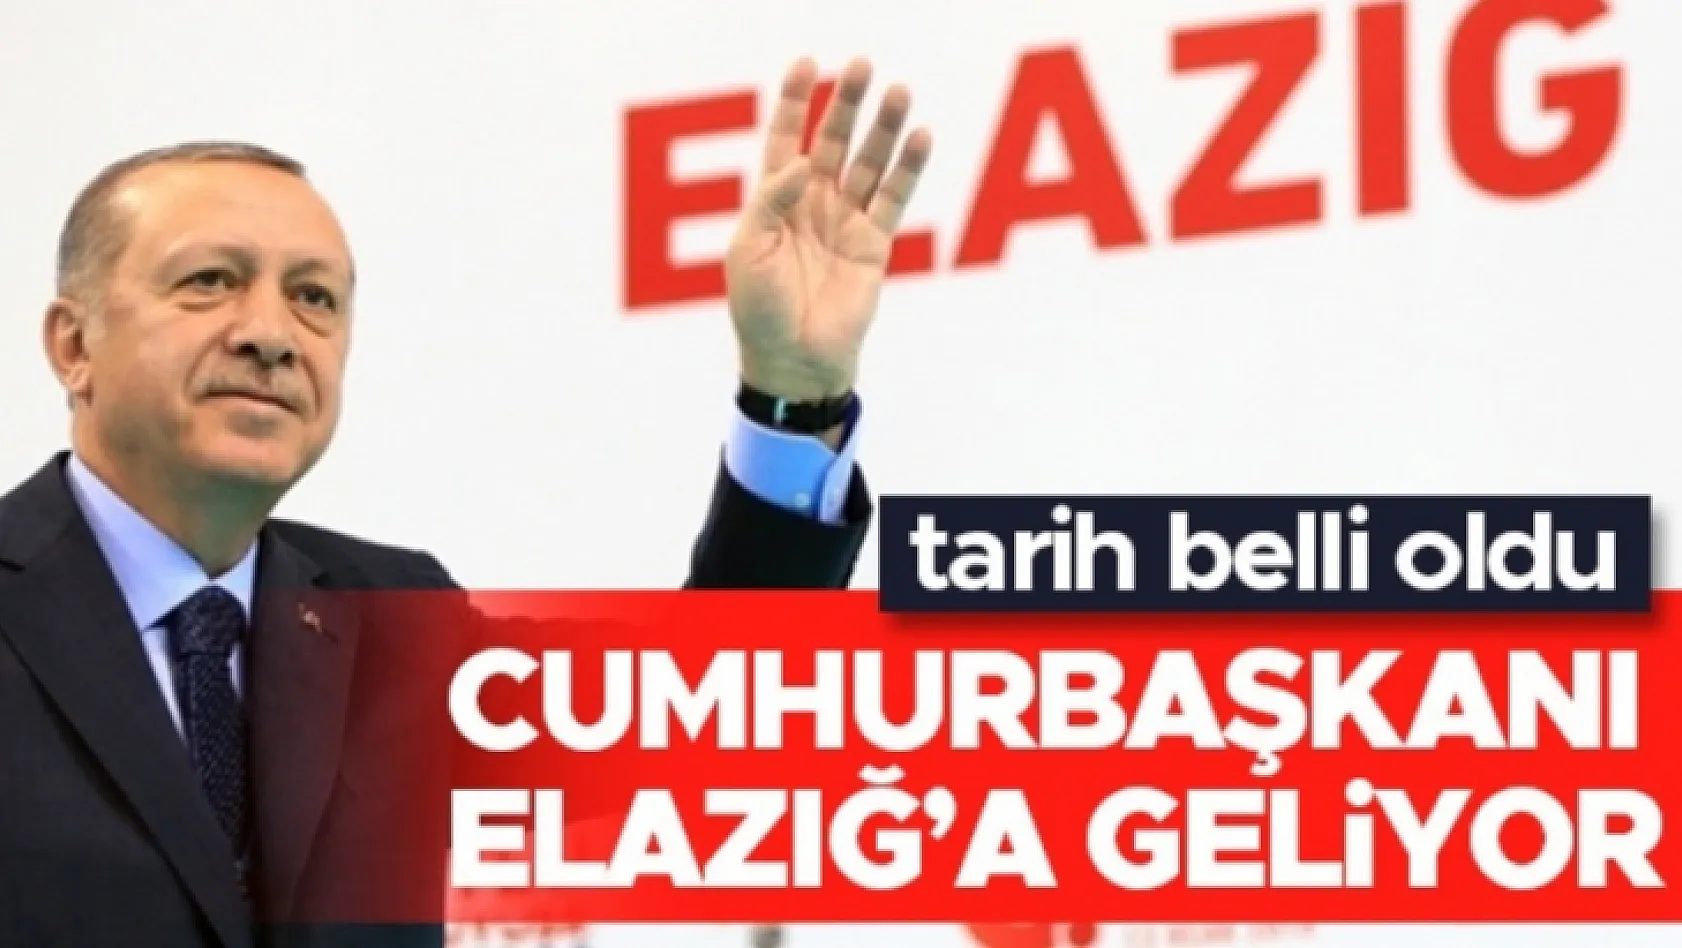 Cumhurbaşkanı Erdoğan, Elazığ'a Geliyor!